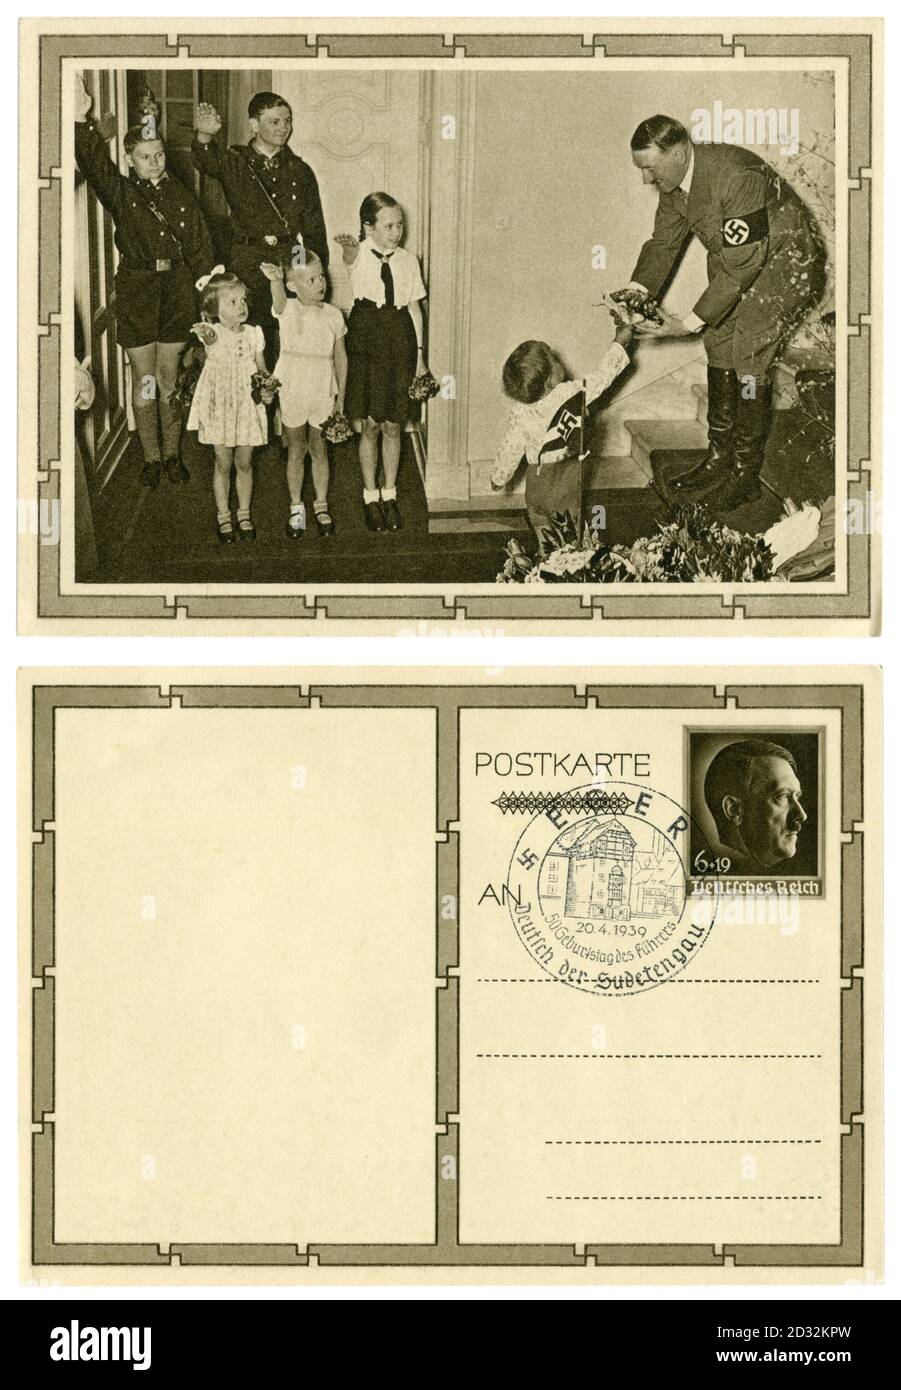 Deutsche historische Postkarte: Adolf Hitlers 50. Geburtstag. Er erhält einen Blumenstrauß von den jüngsten von Goebbels' 6 Kindern, Deutschland, 1939 Stockfoto